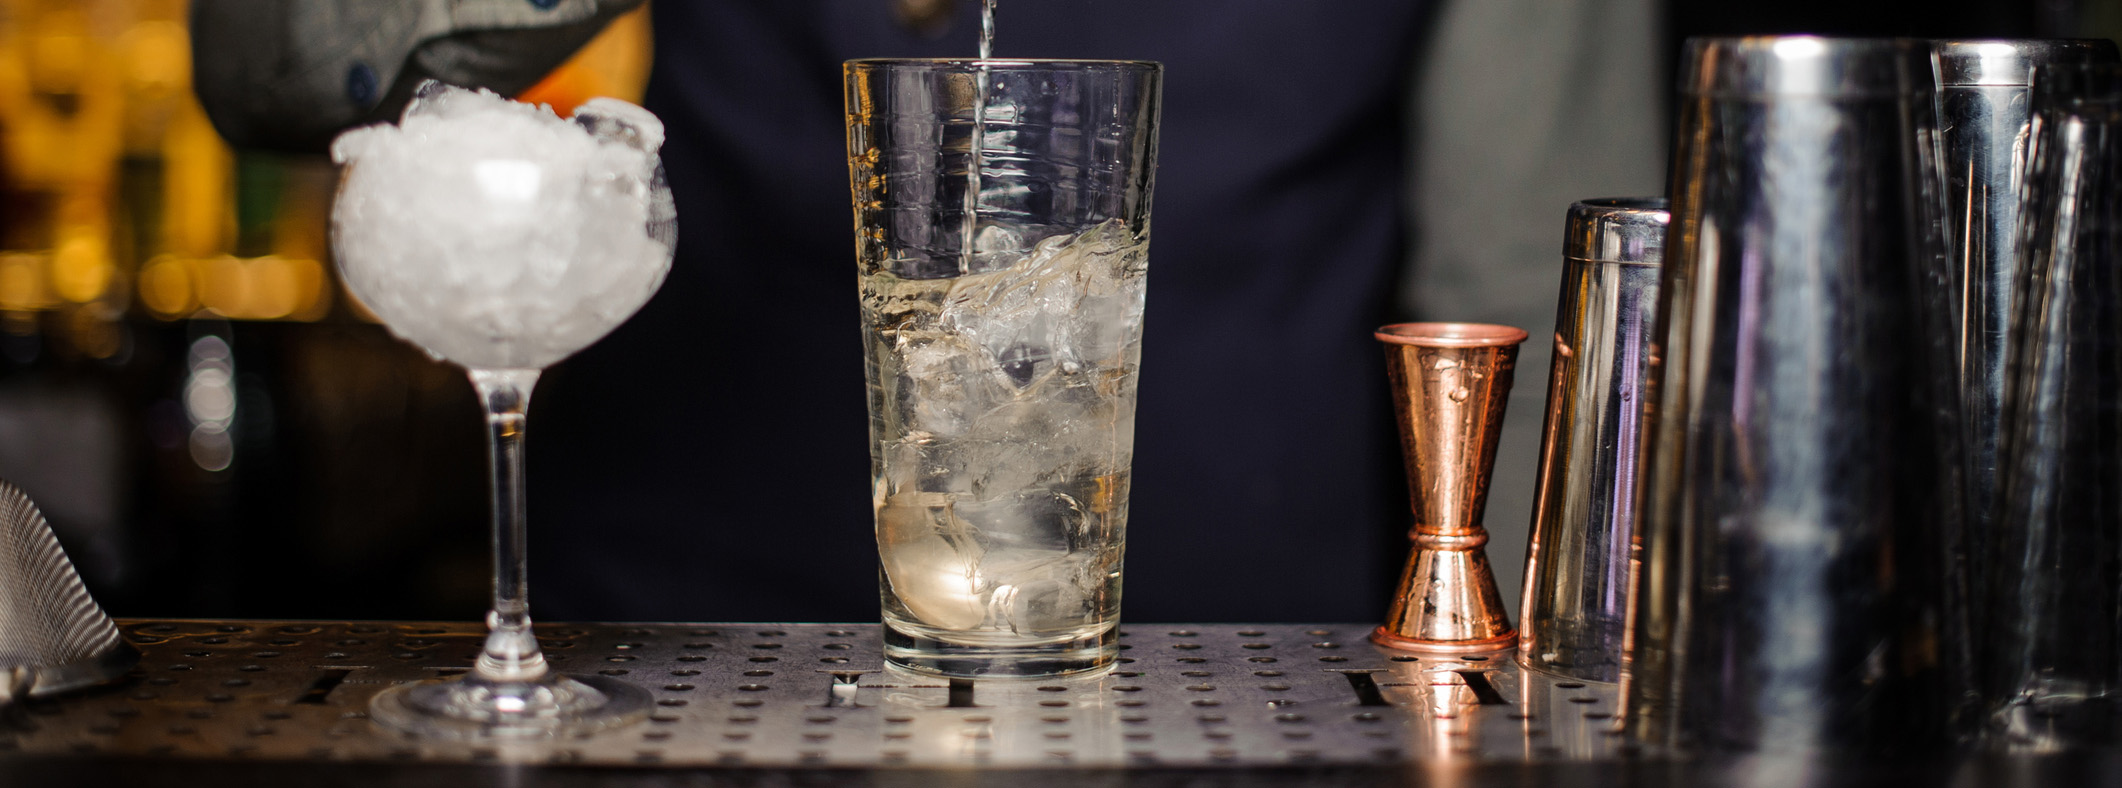 bardisk med glass, målebeger og shaker og en bartender som rører i en drink.